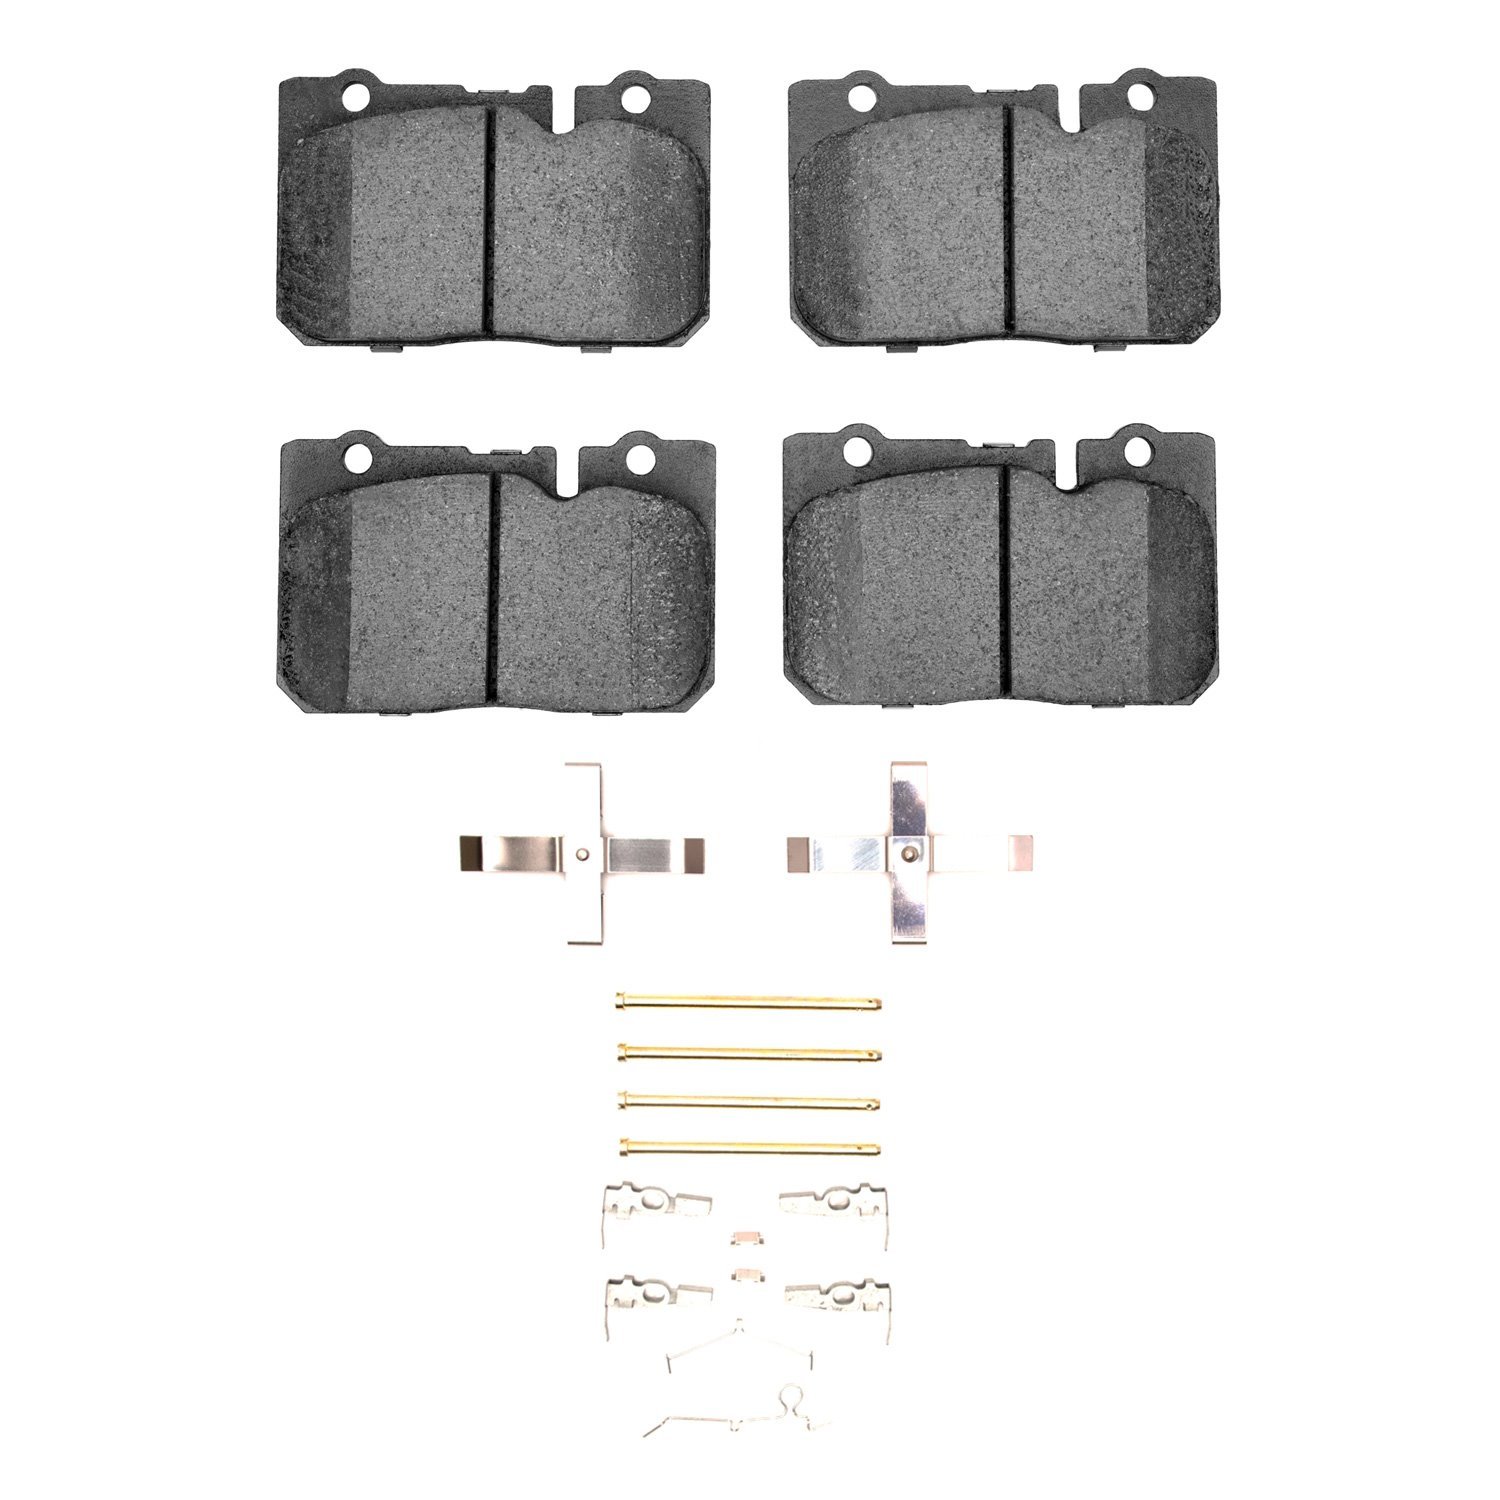 1310-0665-01 3000-Series Ceramic Brake Pads & Hardware Kit, 1995-2000 Lexus/Toyota/Scion, Position: Front